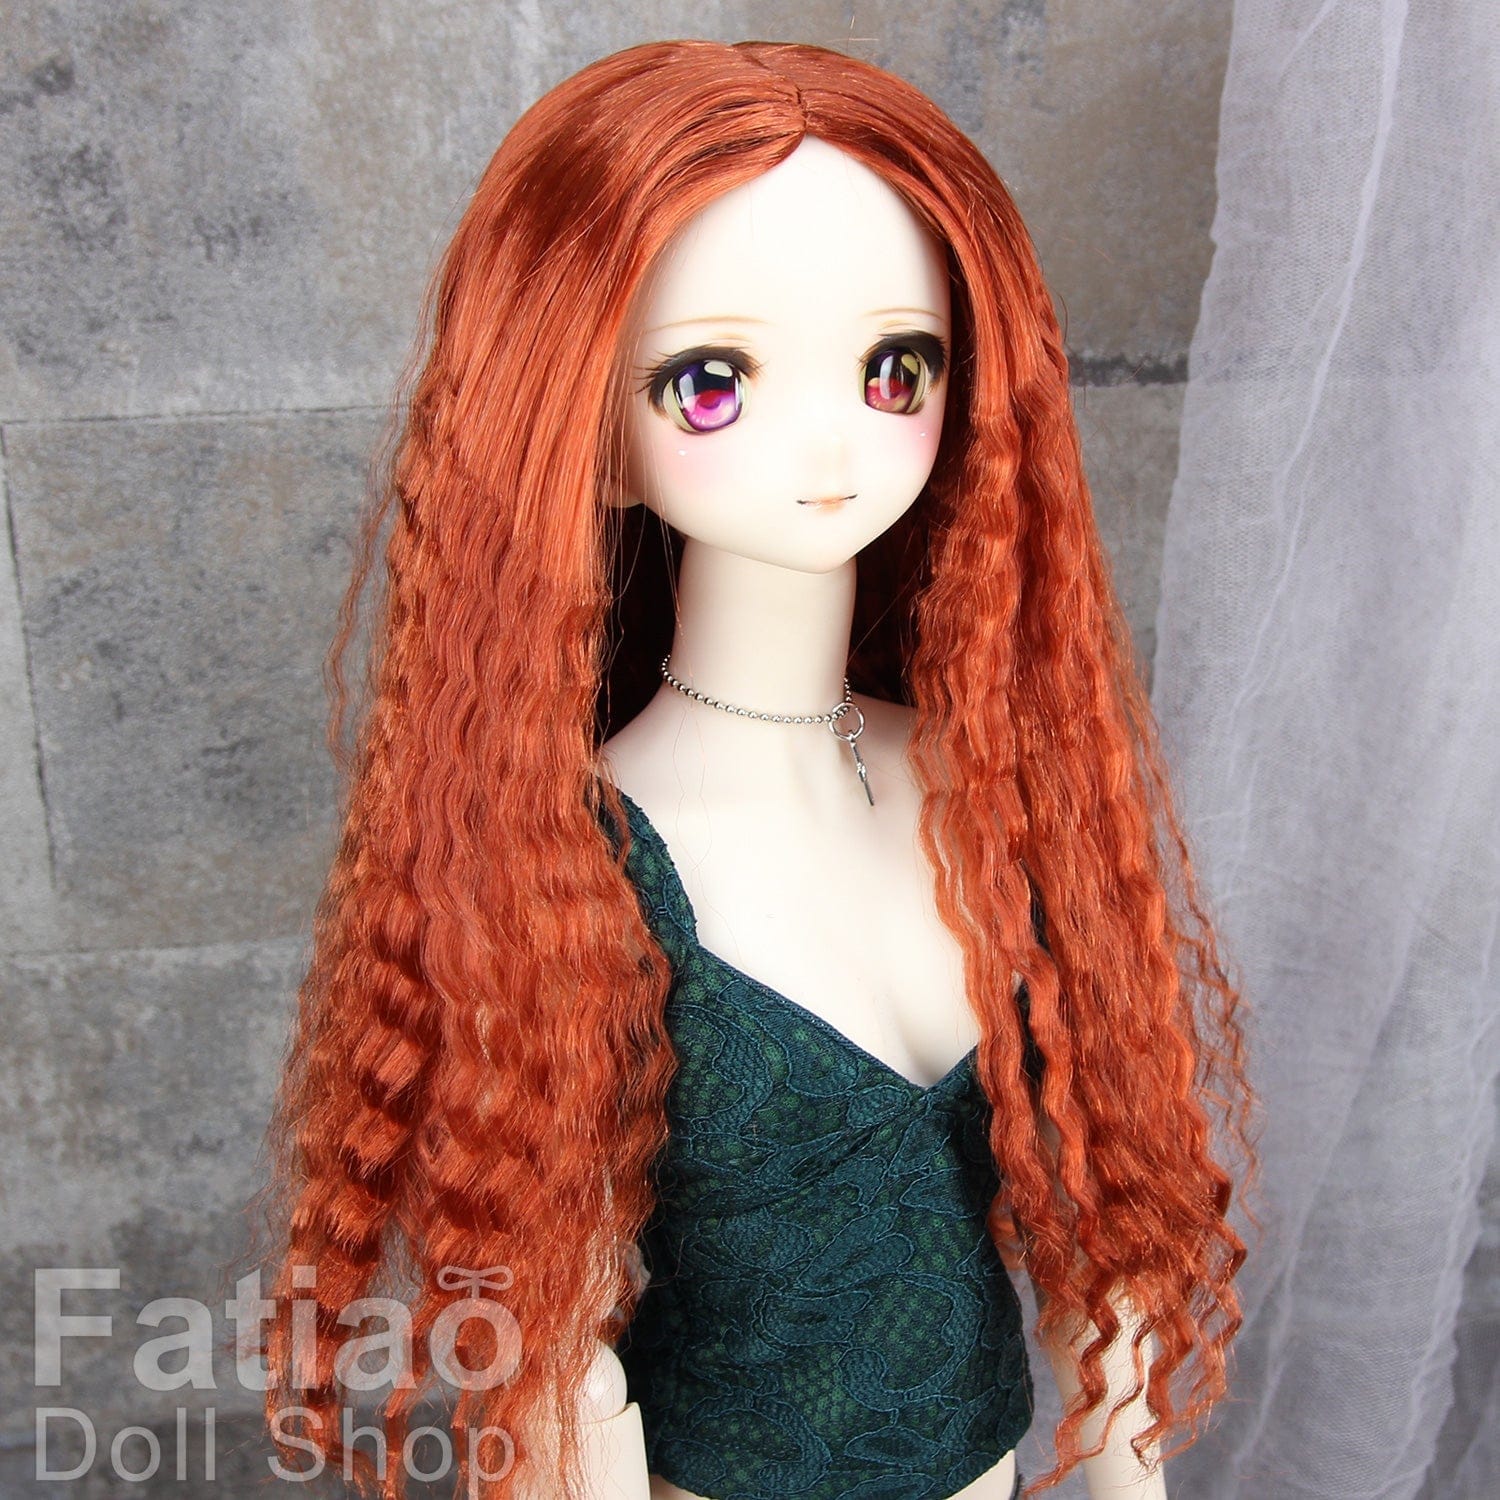 【Fatiao Doll Shop】FWF-118 娃用假髮 多色 / 8-9吋 BJD DD MDD 3分